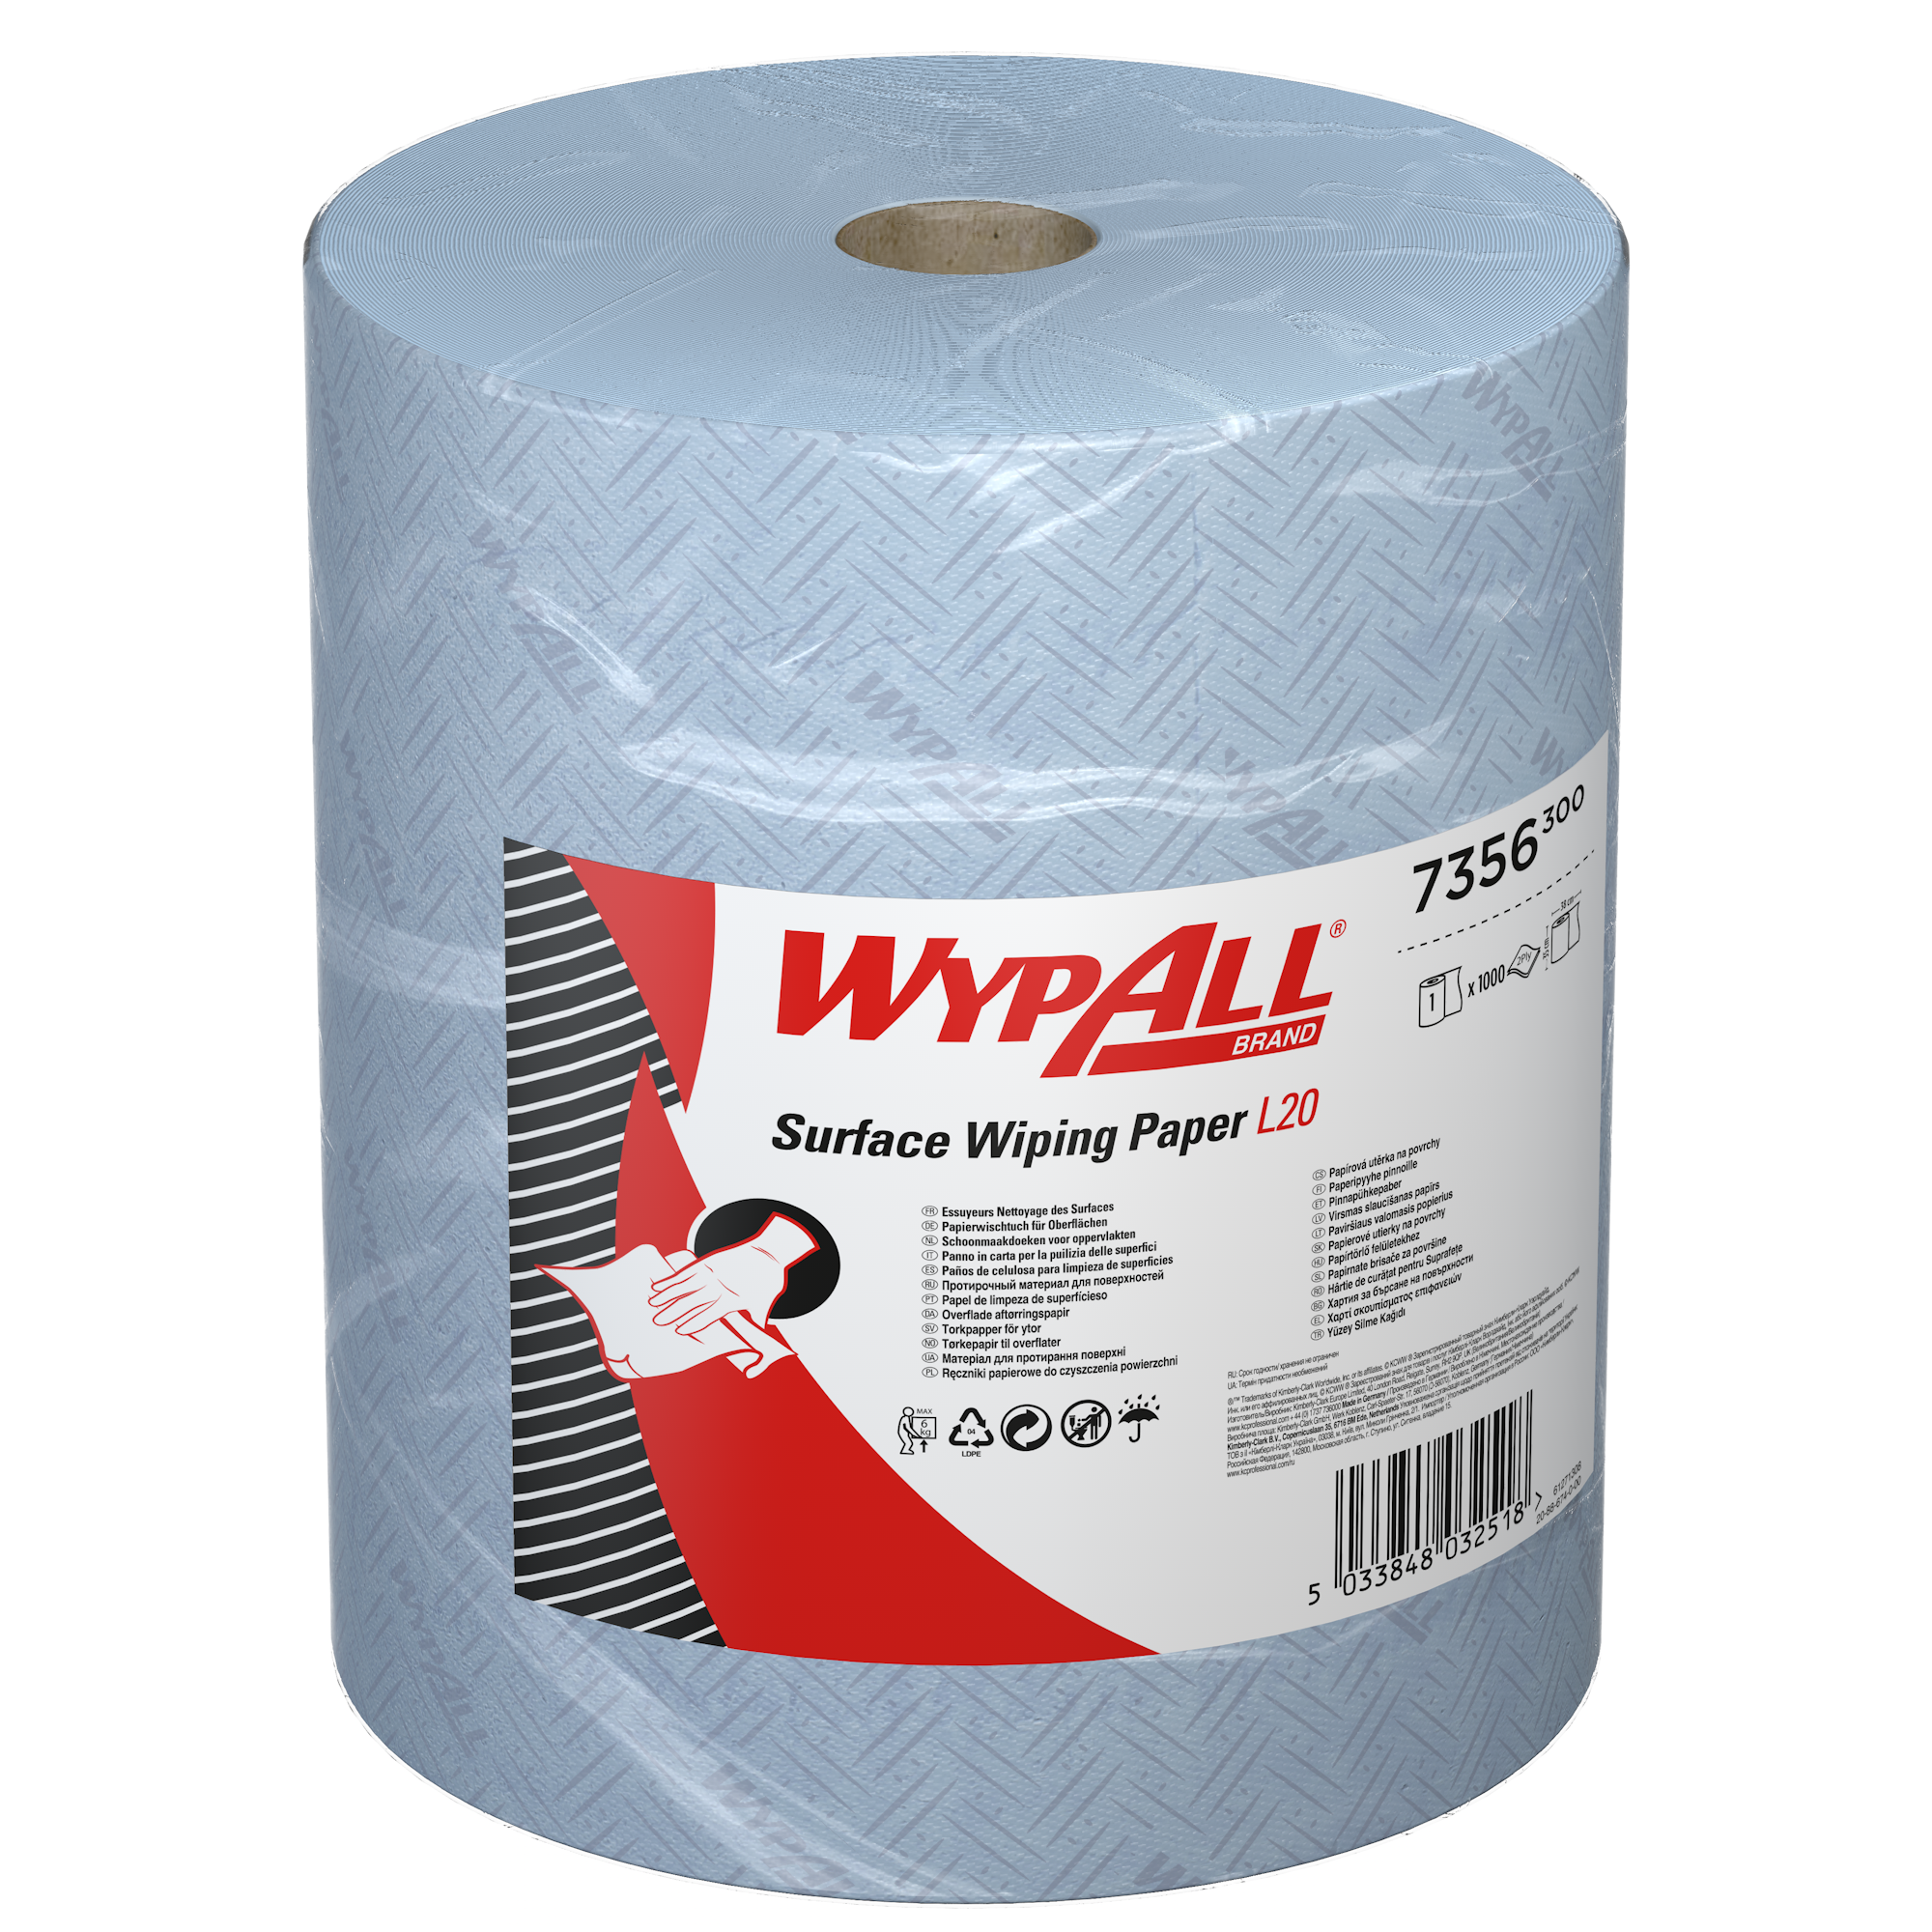 Essuyeur en papier WypAll® L20 Nettoyage des surfaces 7356 - Bobine bleue extra large - 1 Maxi bobine x 1 000 bobines bleues, essuyeurs en papier à 2 épaisseurs - 7356